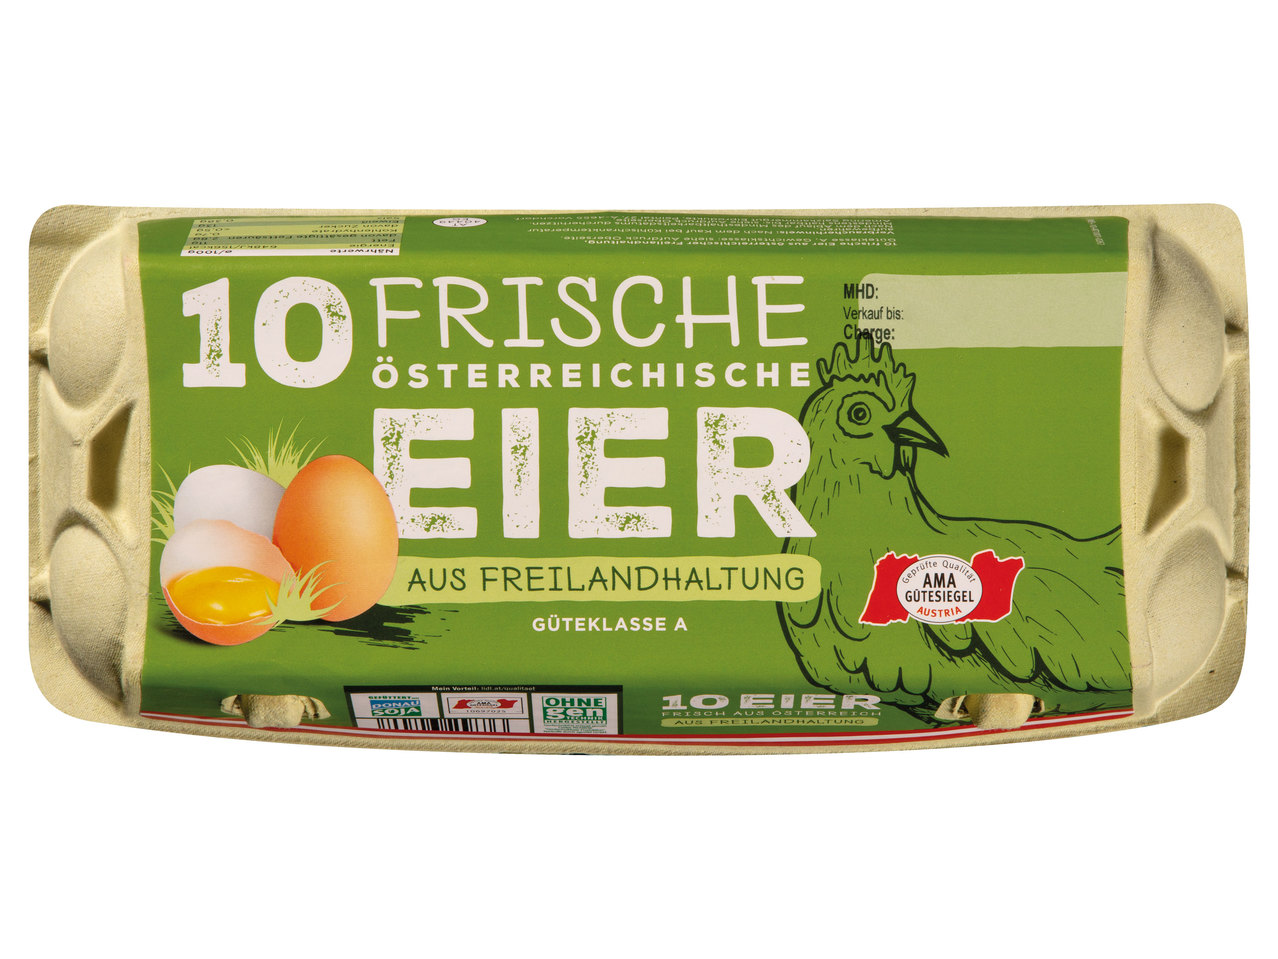 Österreichische Eier aus Freilandhaltung